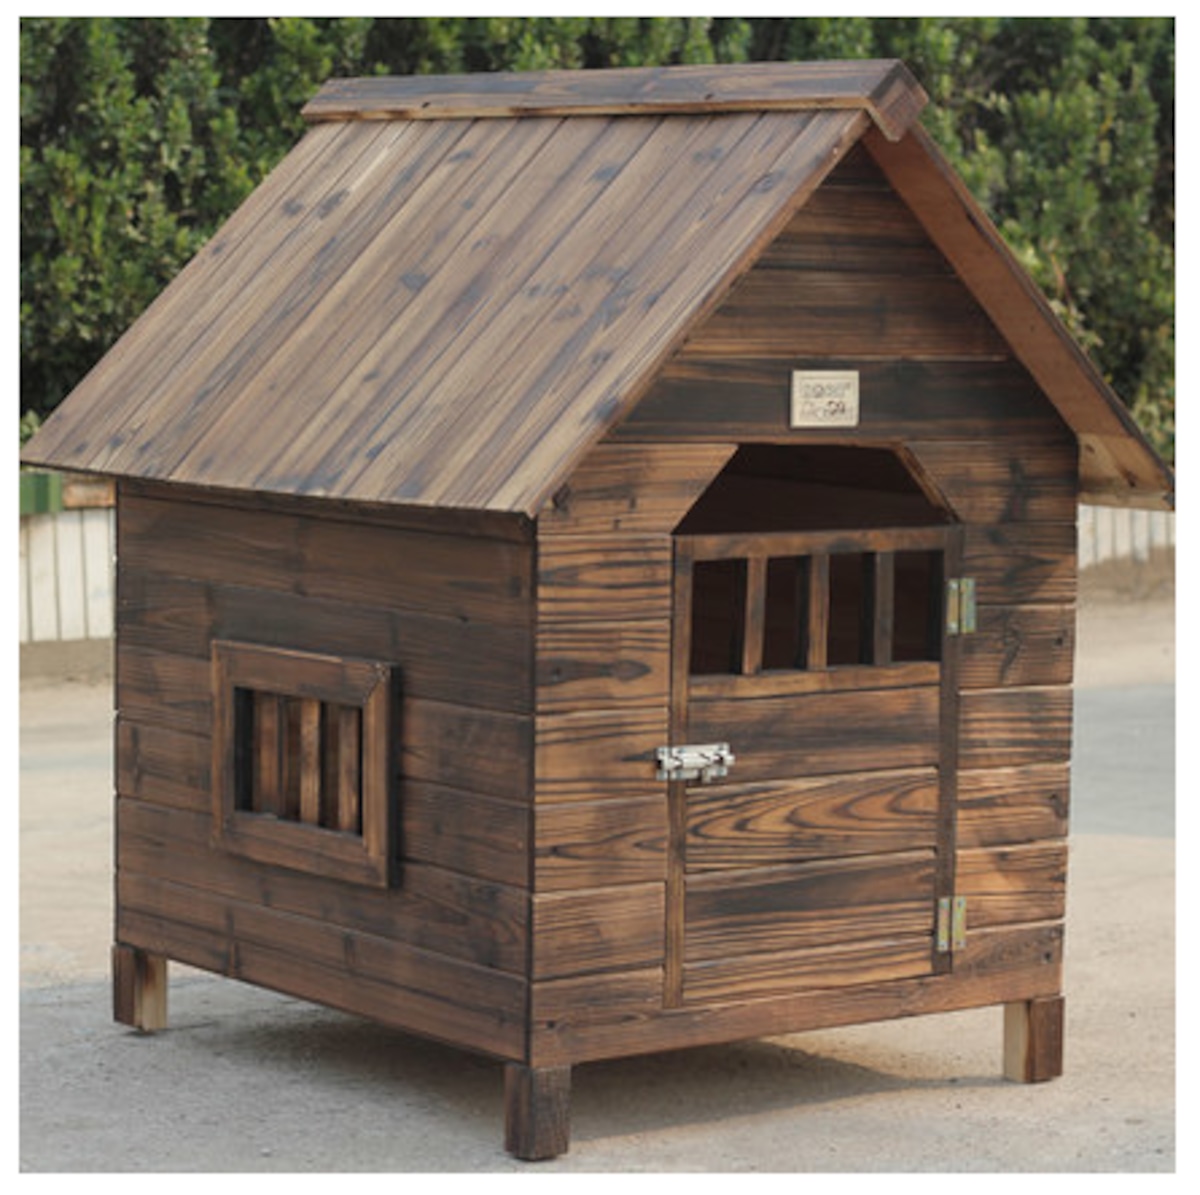 天然木製の犬小屋 サイズ 木で組立てる犬小屋 屋根 取り外しお掃除